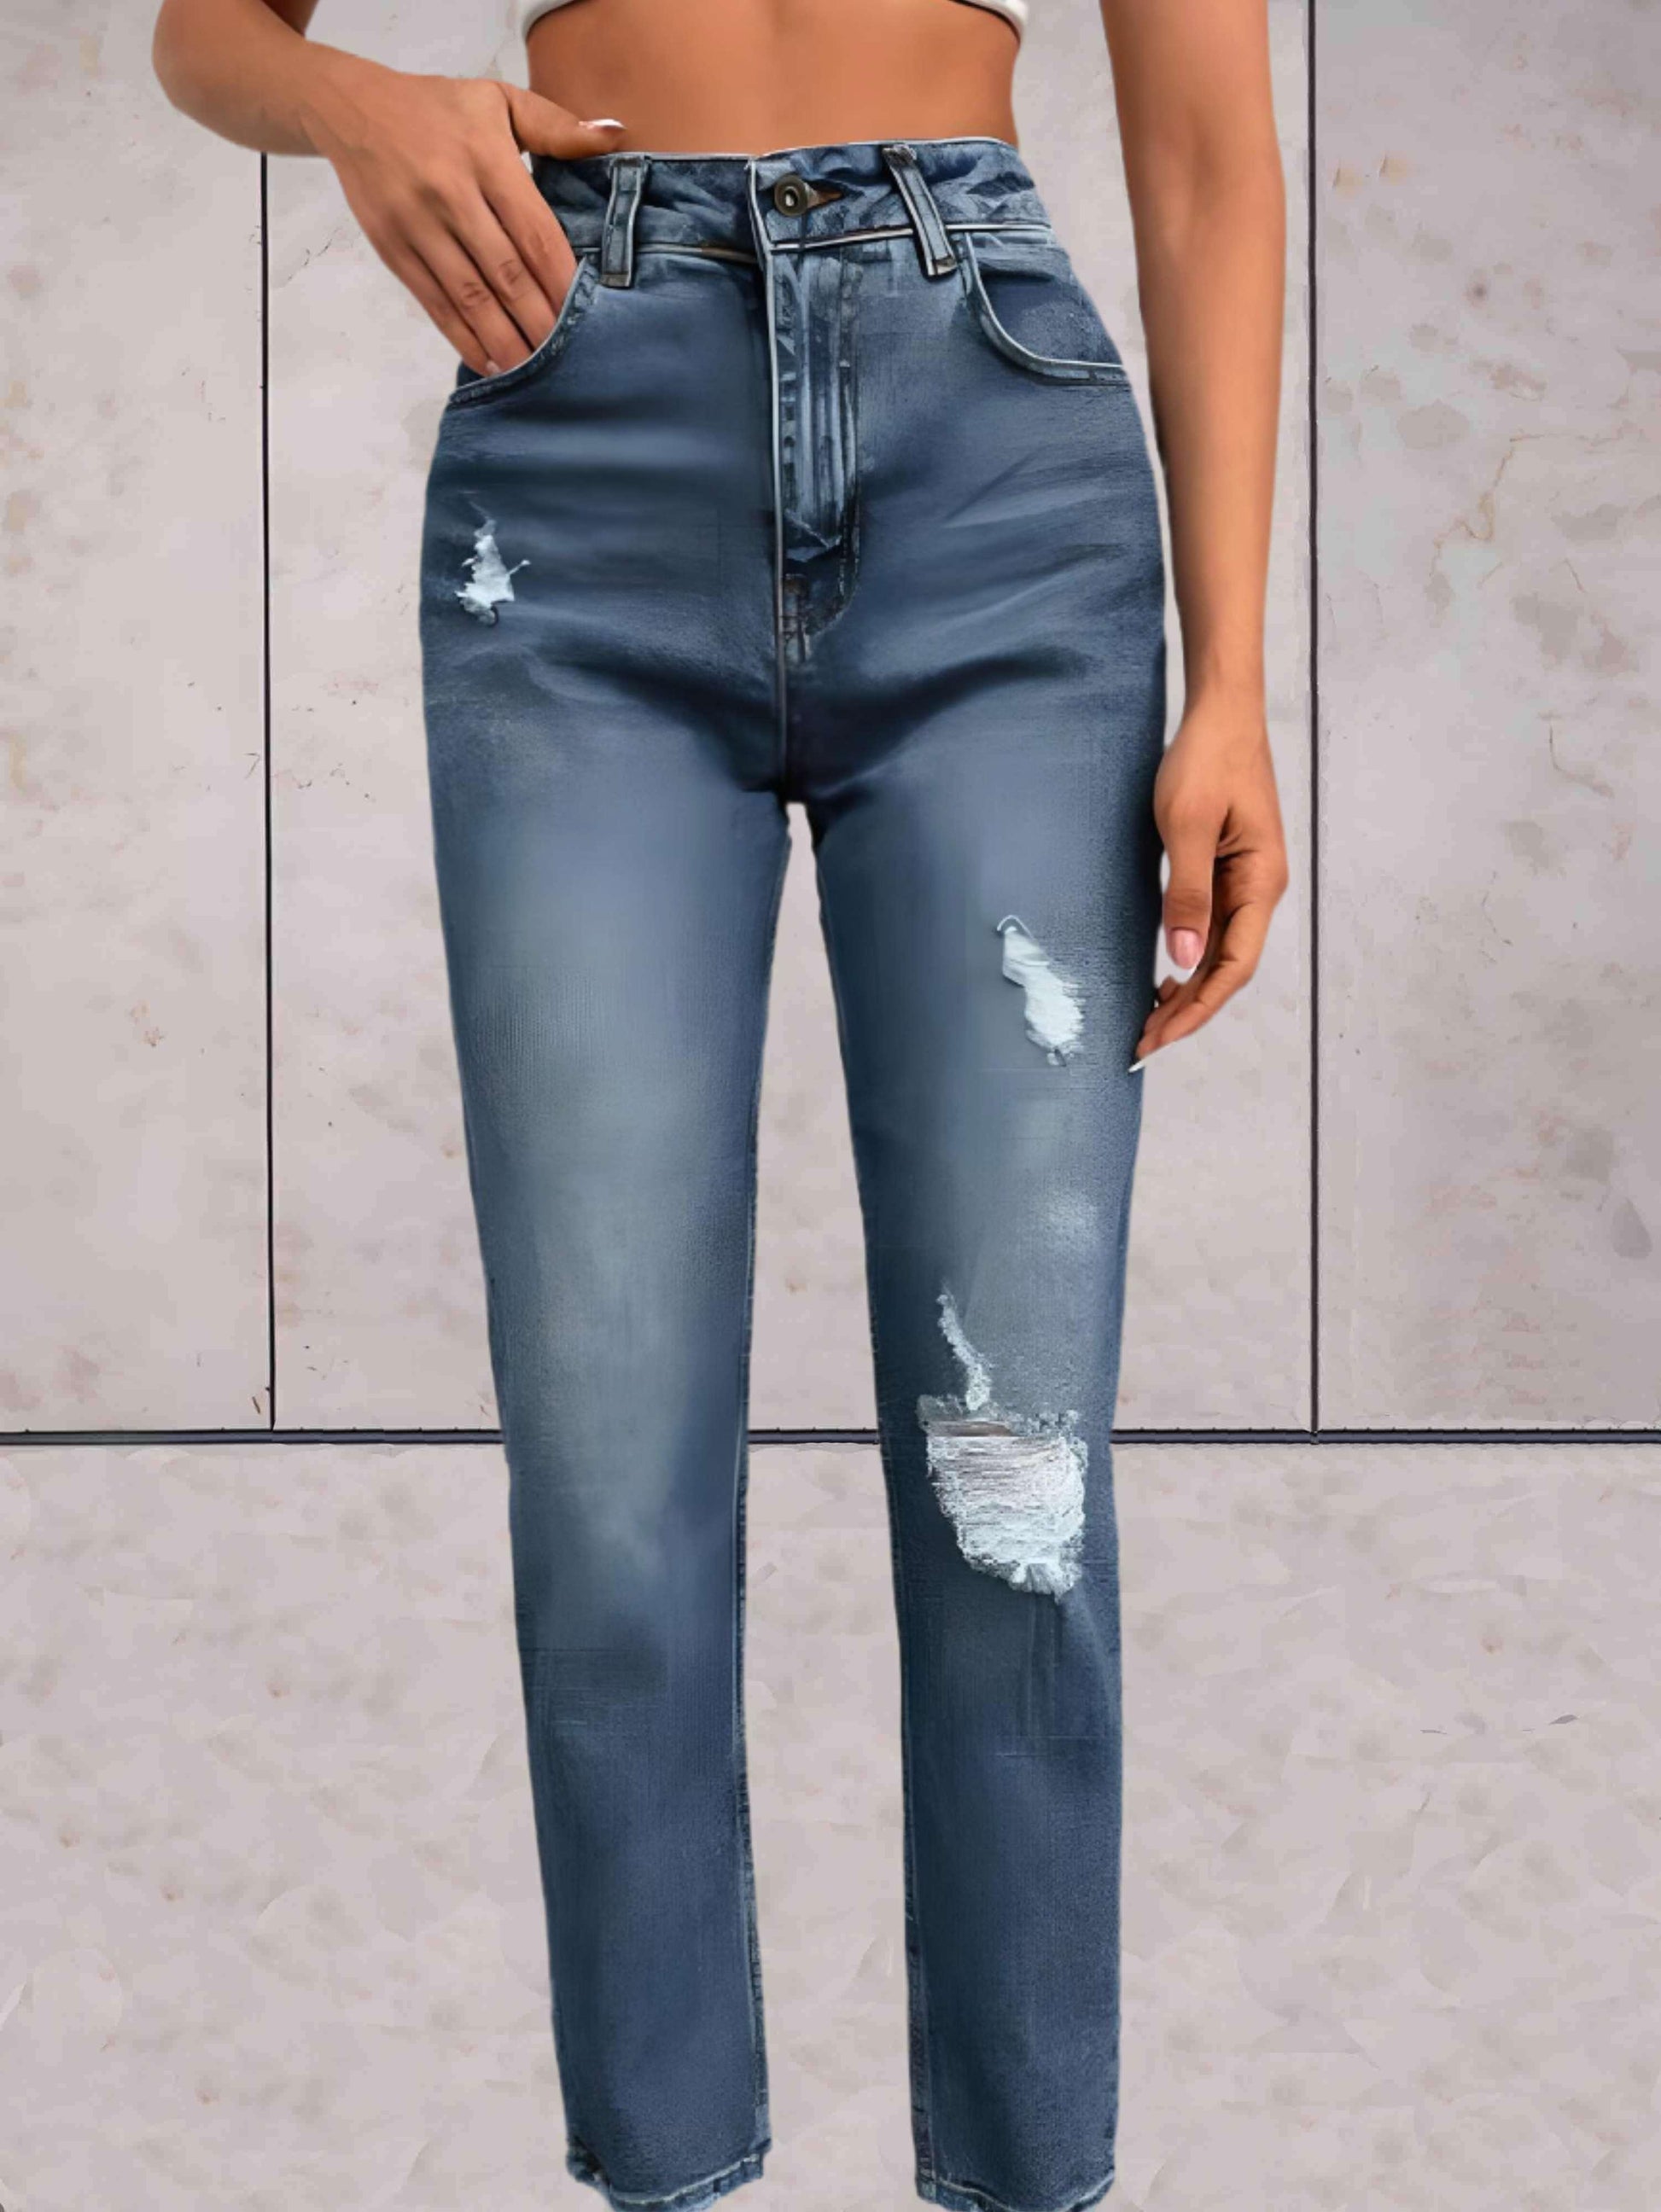 Jada - Enkellange gescheurde jeans met semi-vervaagd dessin - Sky-Sense